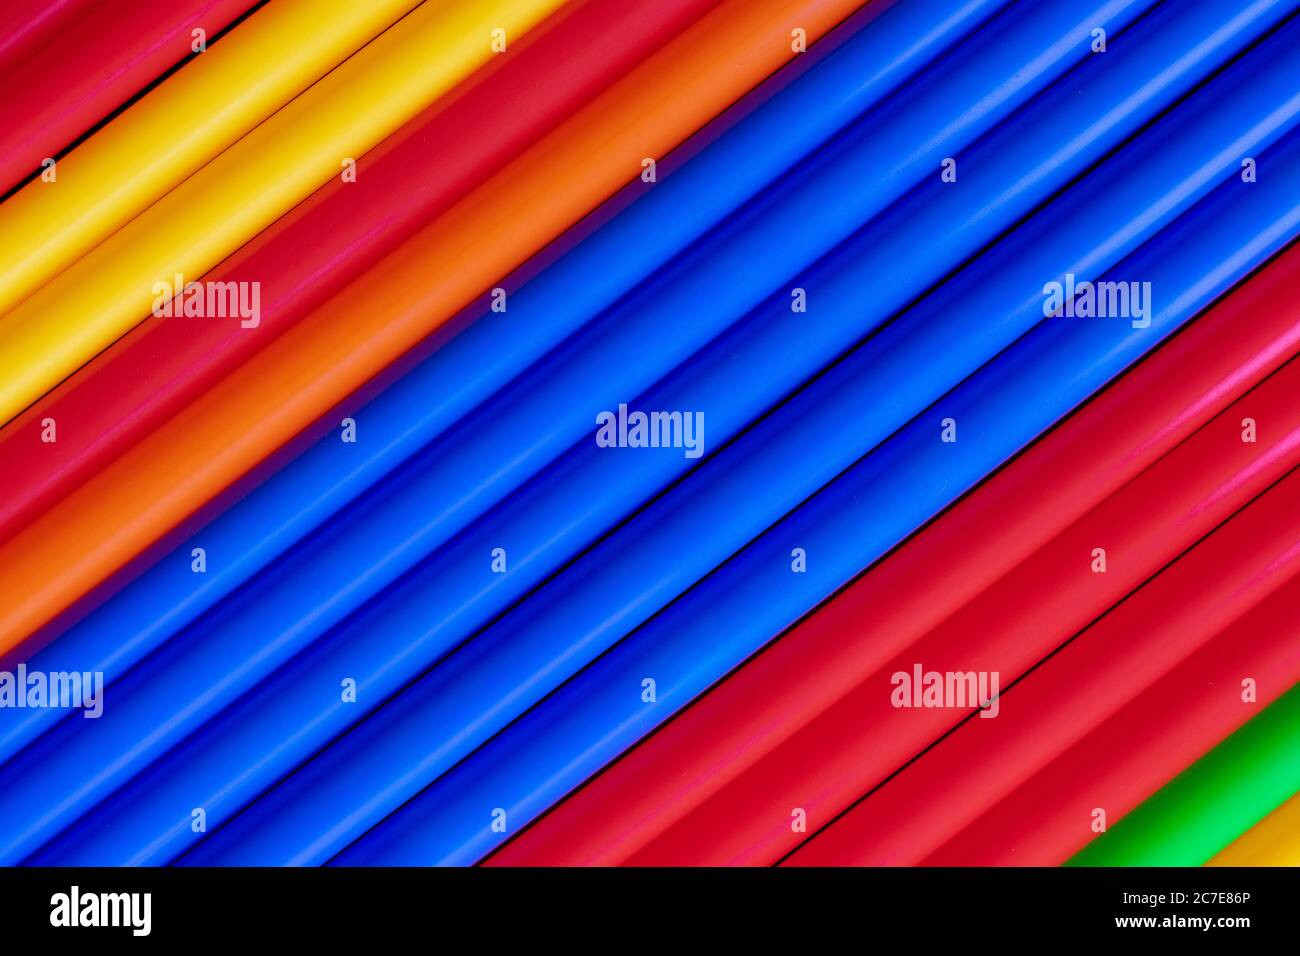 Tubi colorati in plastica si stagliano sullo sfondo diagonale Foto Stock